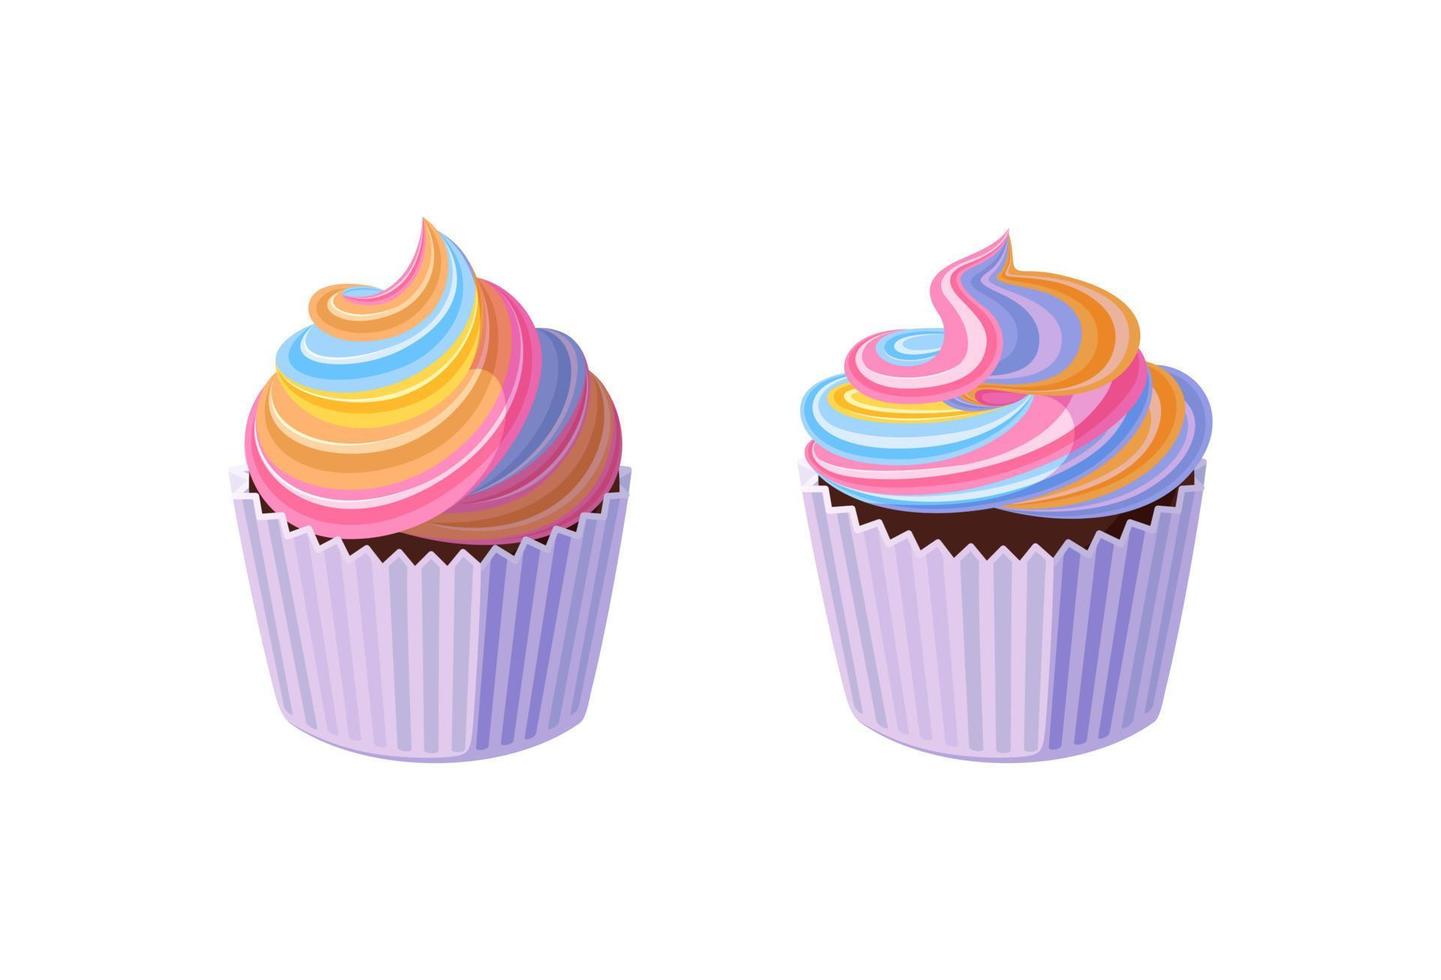 cupcakes com glacê de arco-íris rodado. saborosos muffins com creme colorido. ilustração vetorial em estilo cartoon vetor